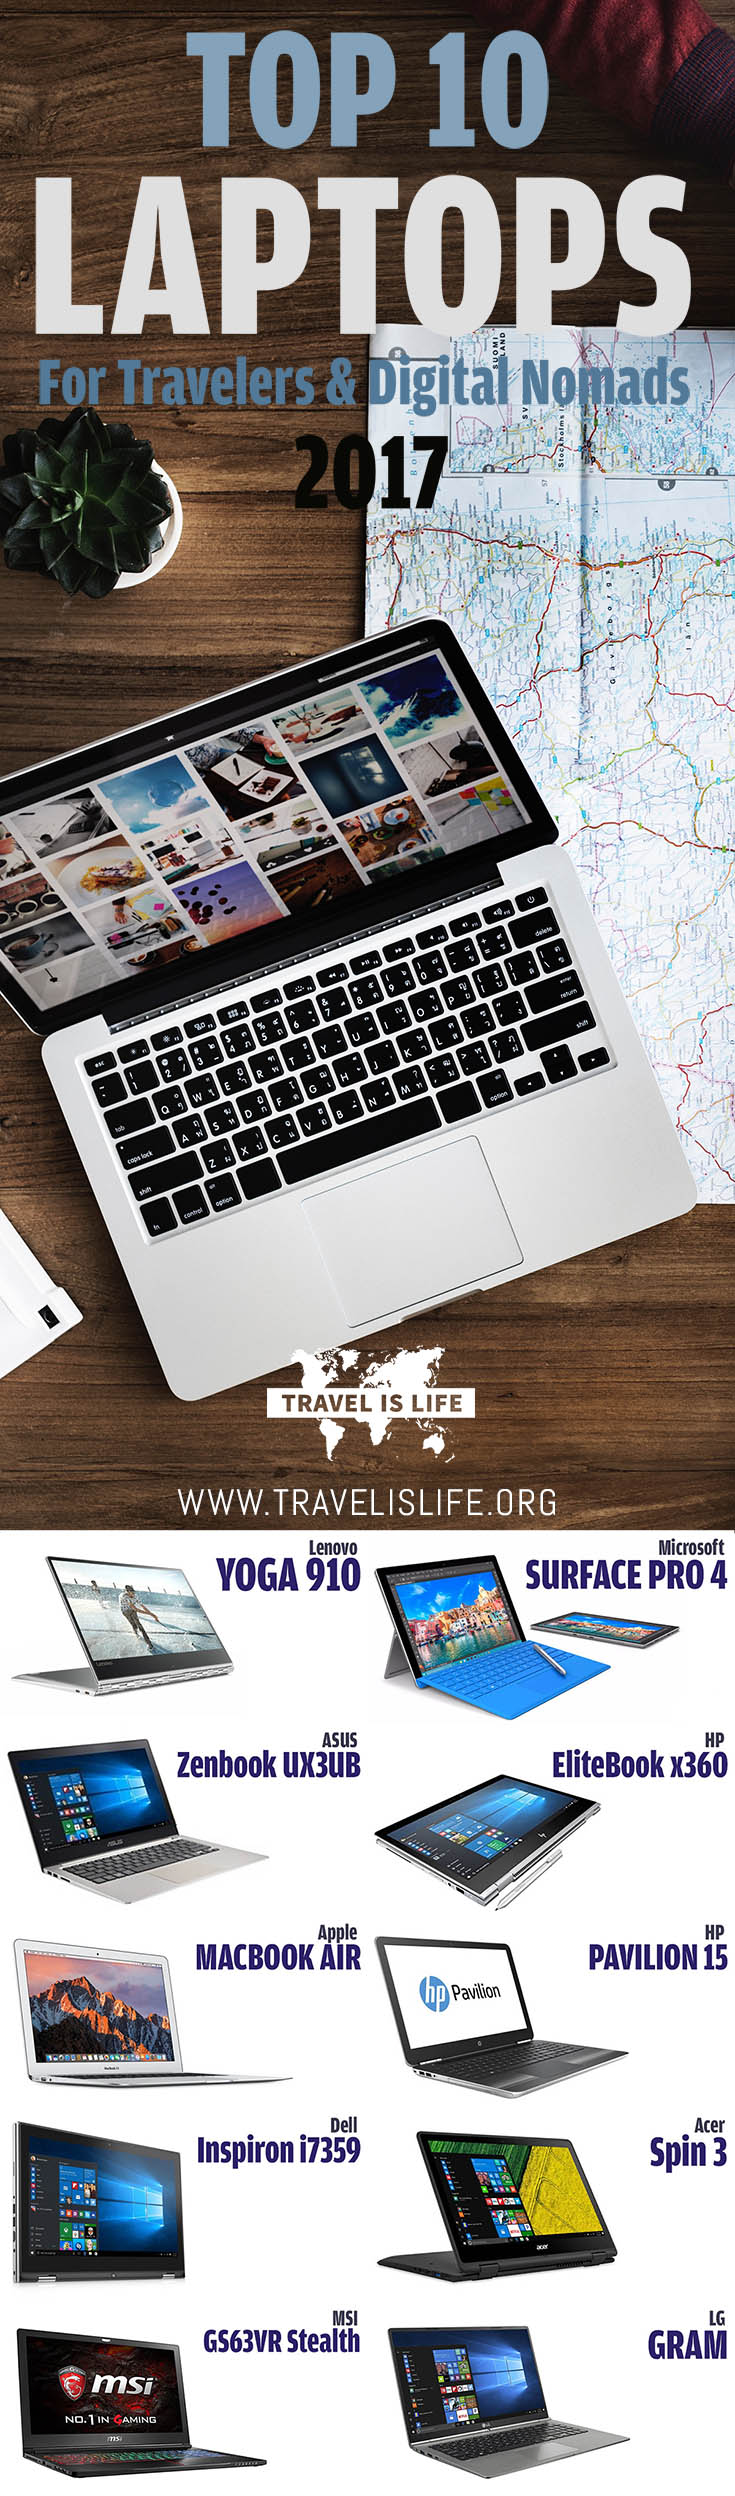 Top 10 Best Travel Laptops for Digital Nomads